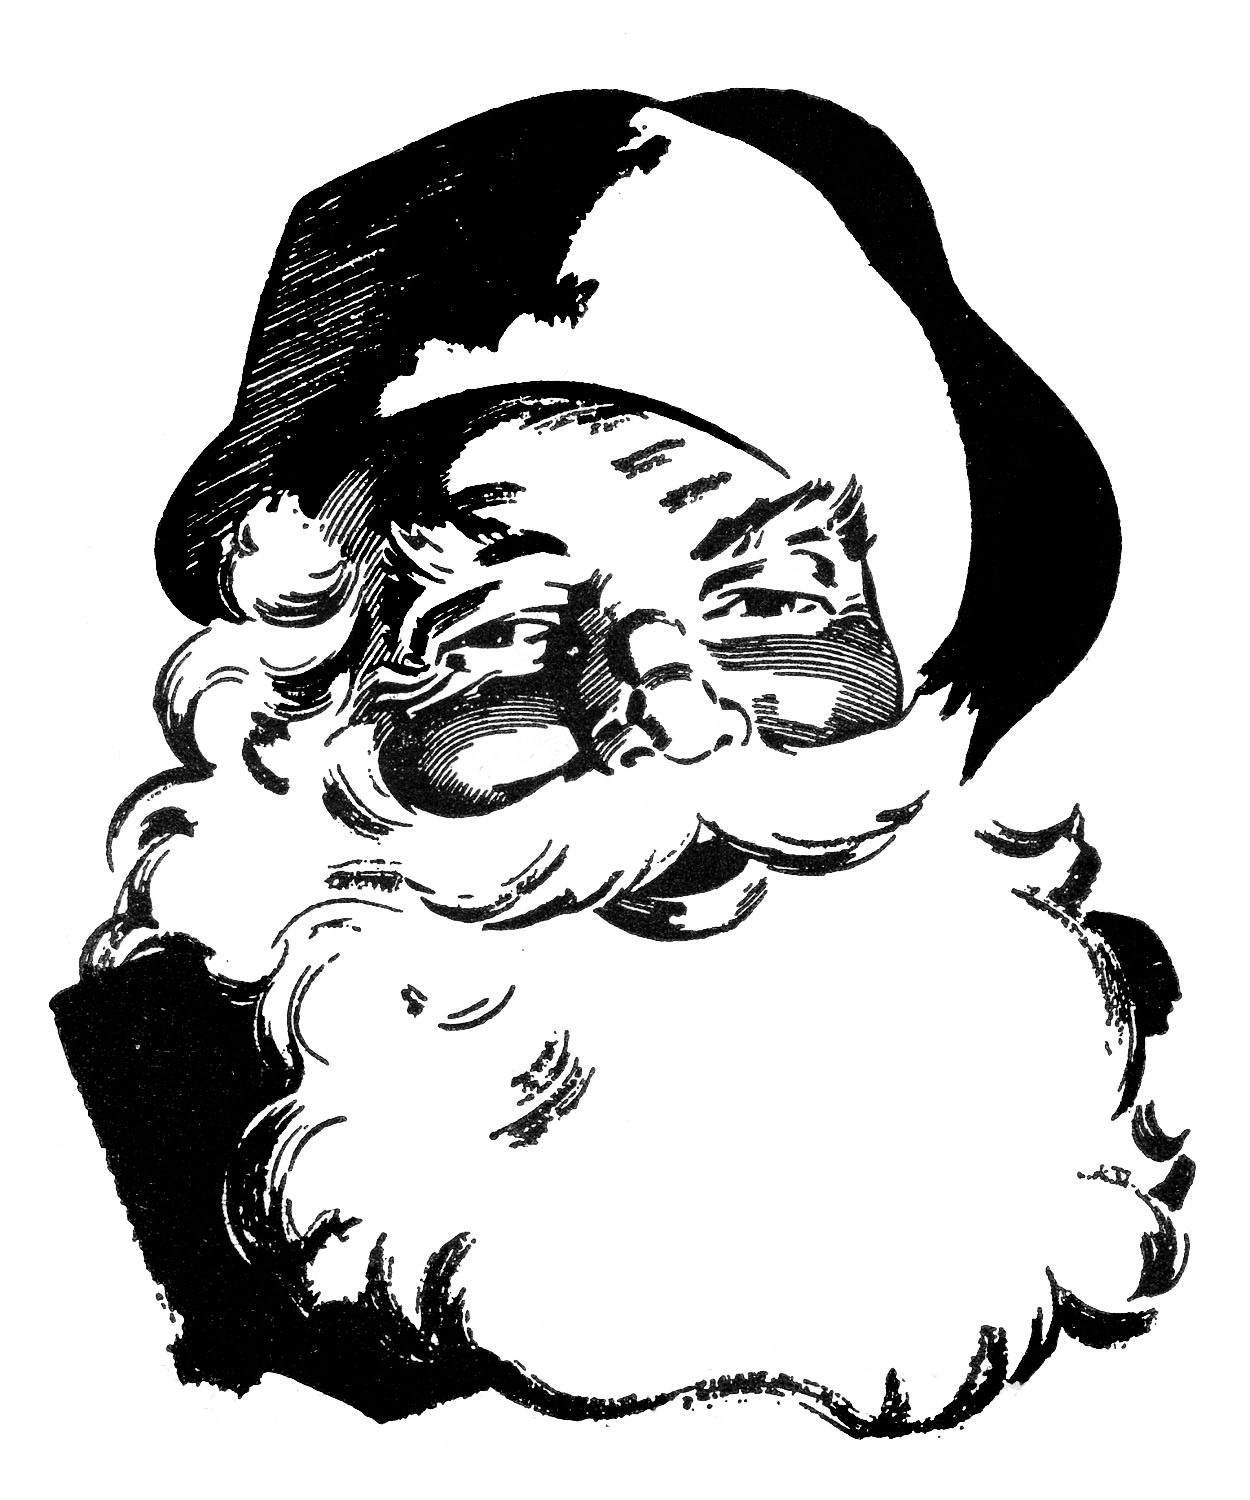 Vintage santa face clipart